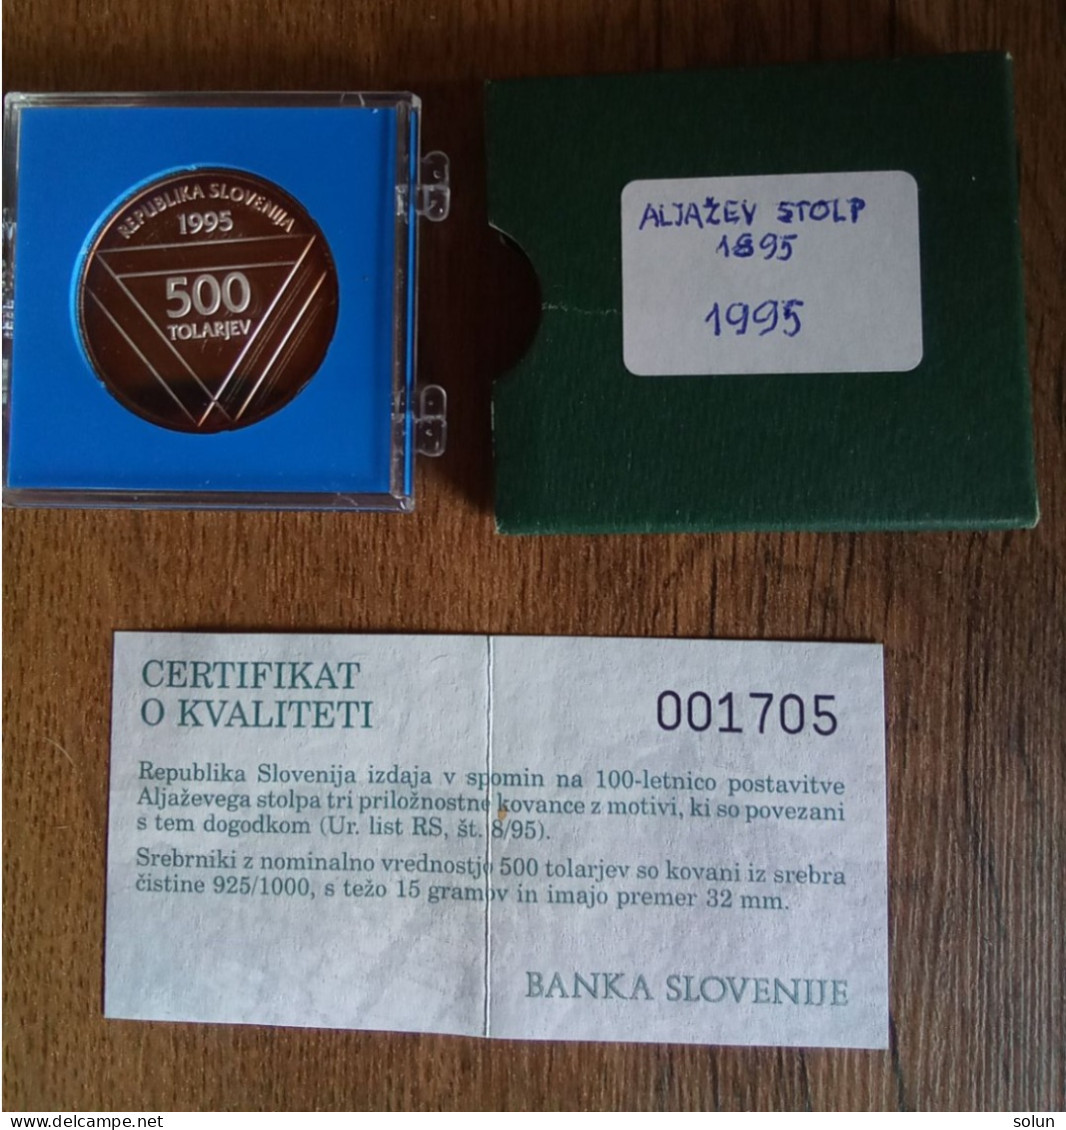 500 Tolar Tolarjev 1995 ALJAŽEV STOLP Srebrnik Silver Coin - Slovenia